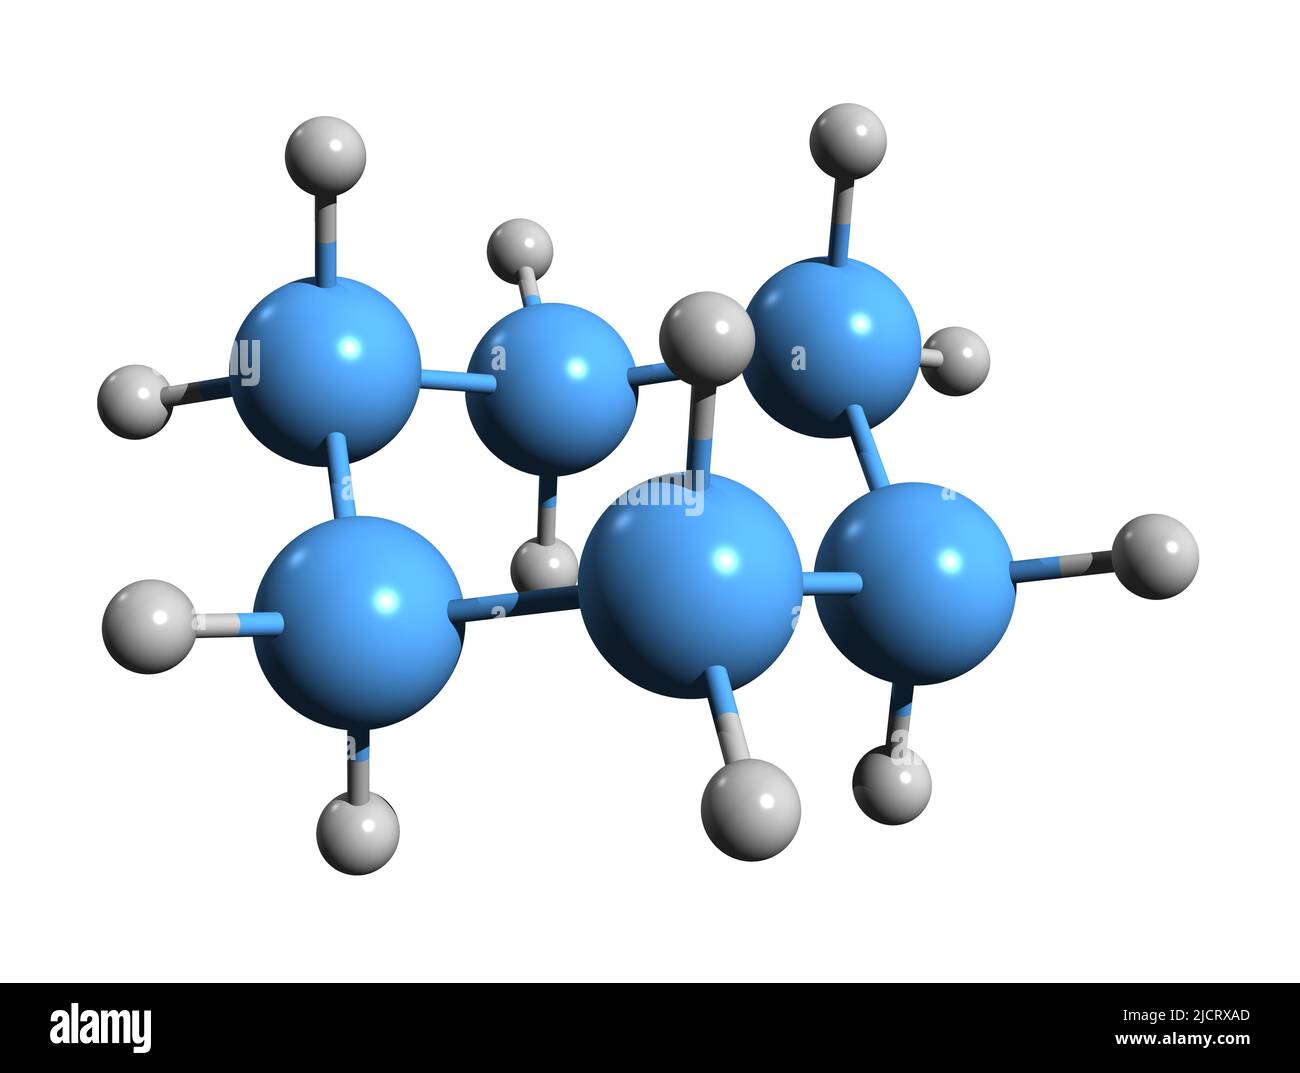 3D Aufnahme der Skelettformel von Cyclohexan - molekularchemische Struktur von Cycloalkan C6H12 auf weißem Hintergrund isoliert Stockfoto